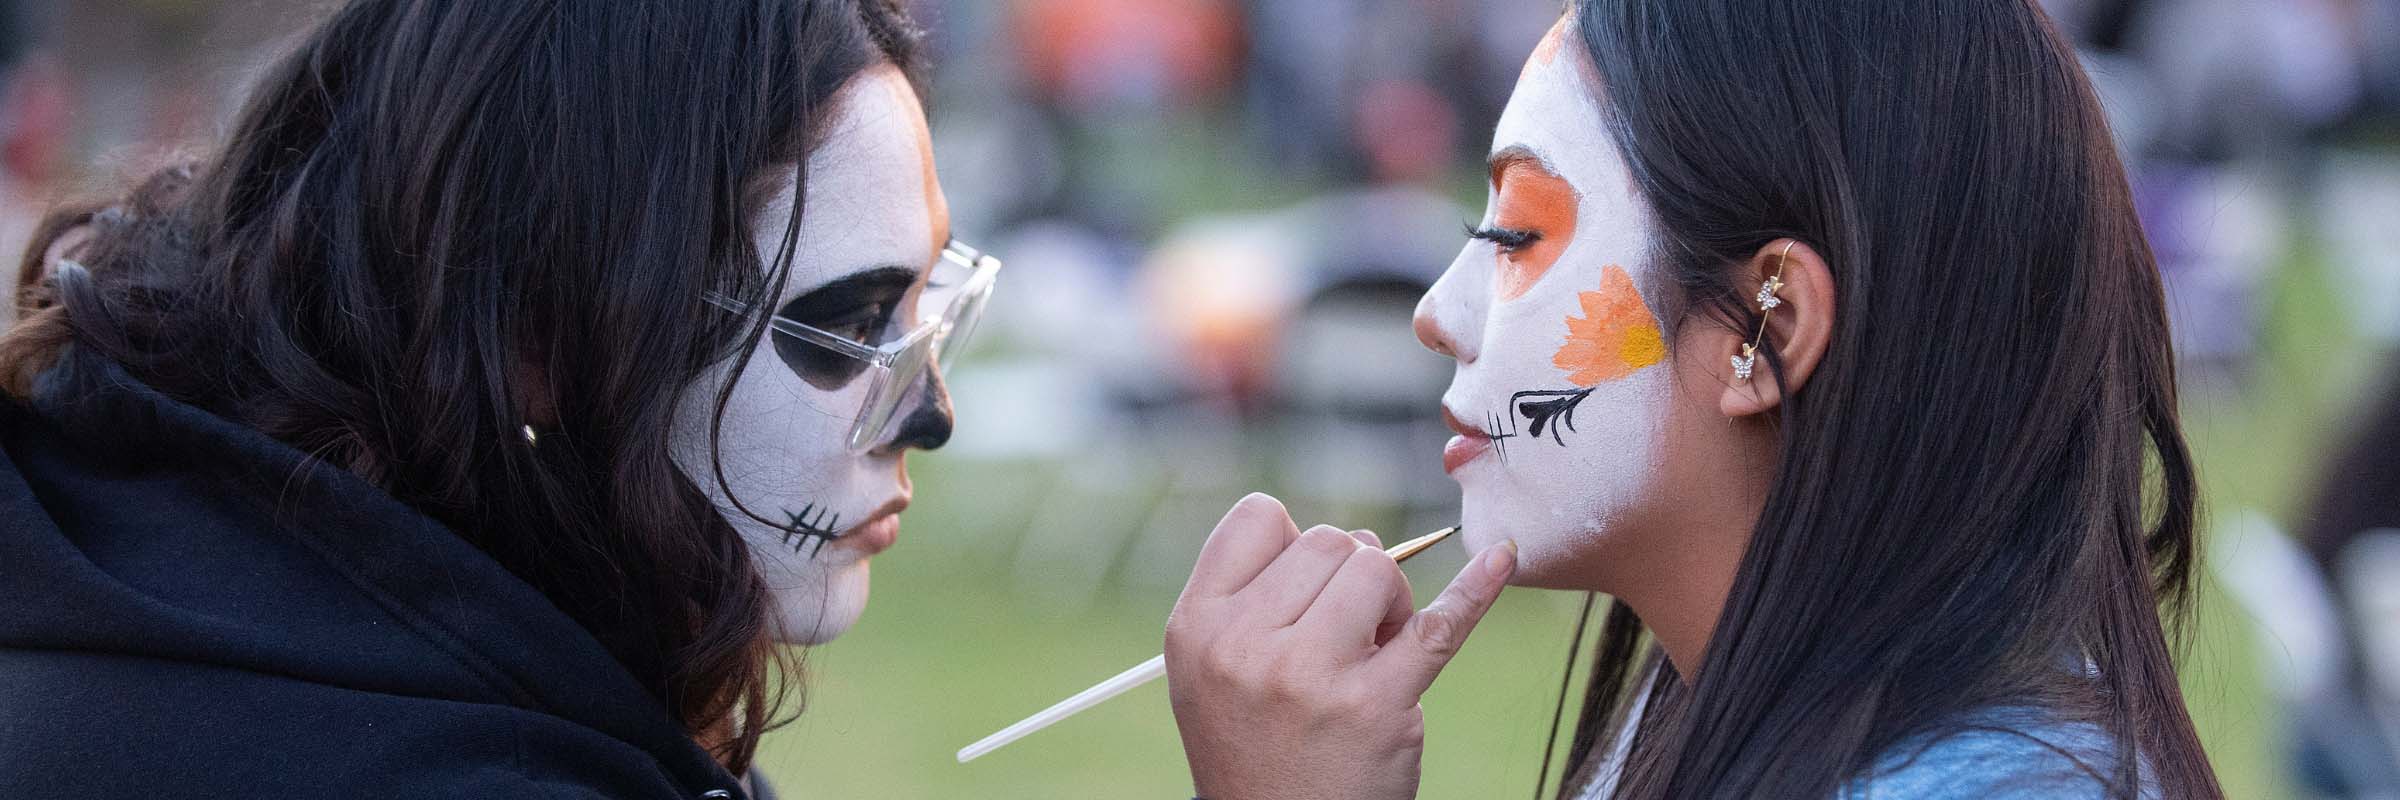 A face painter paints the face of a student at Dia de los Muertos